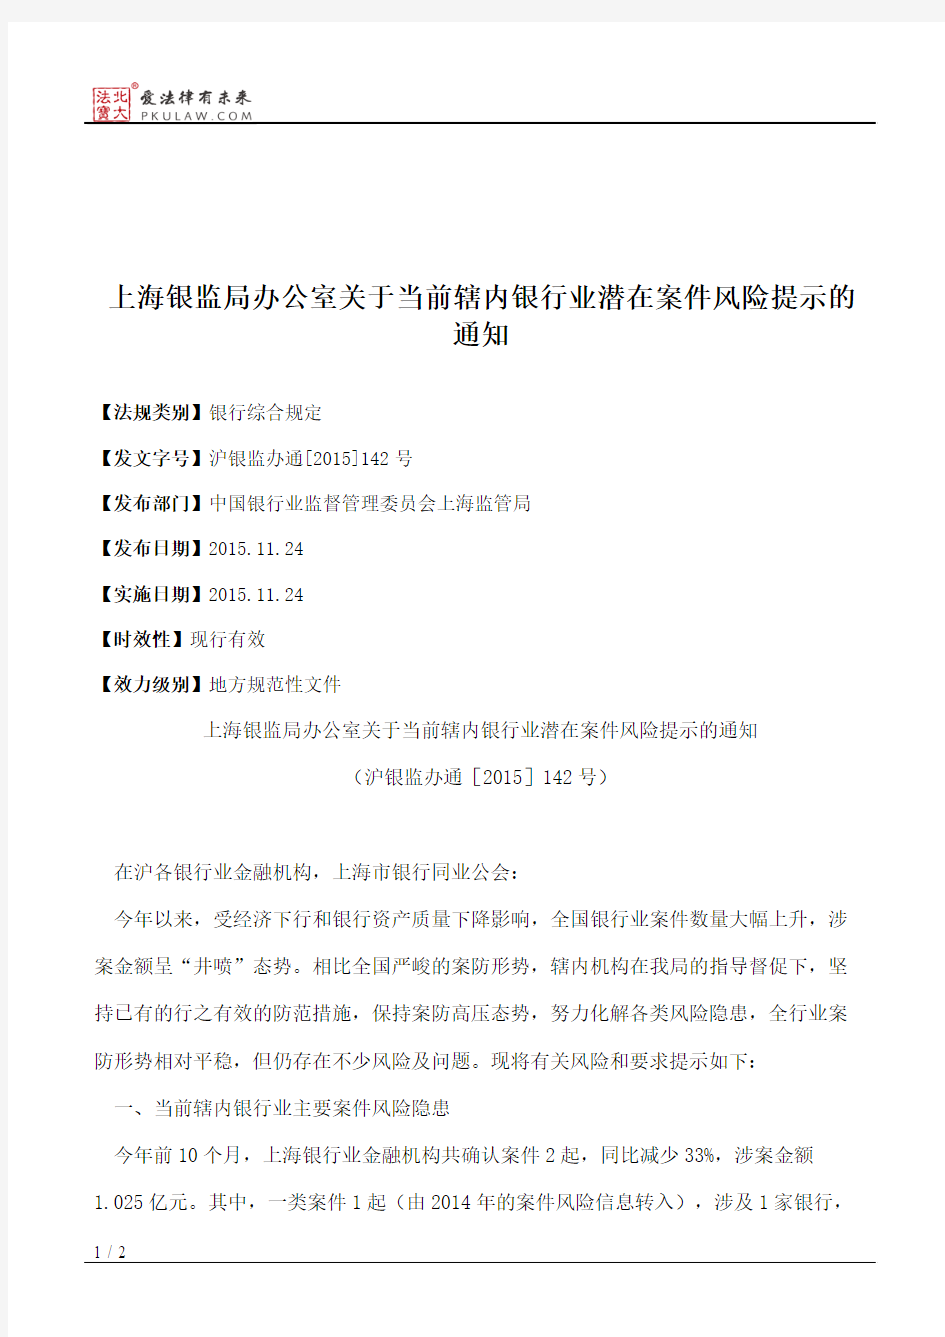 上海银监局办公室关于当前辖内银行业潜在案件风险提示的通知